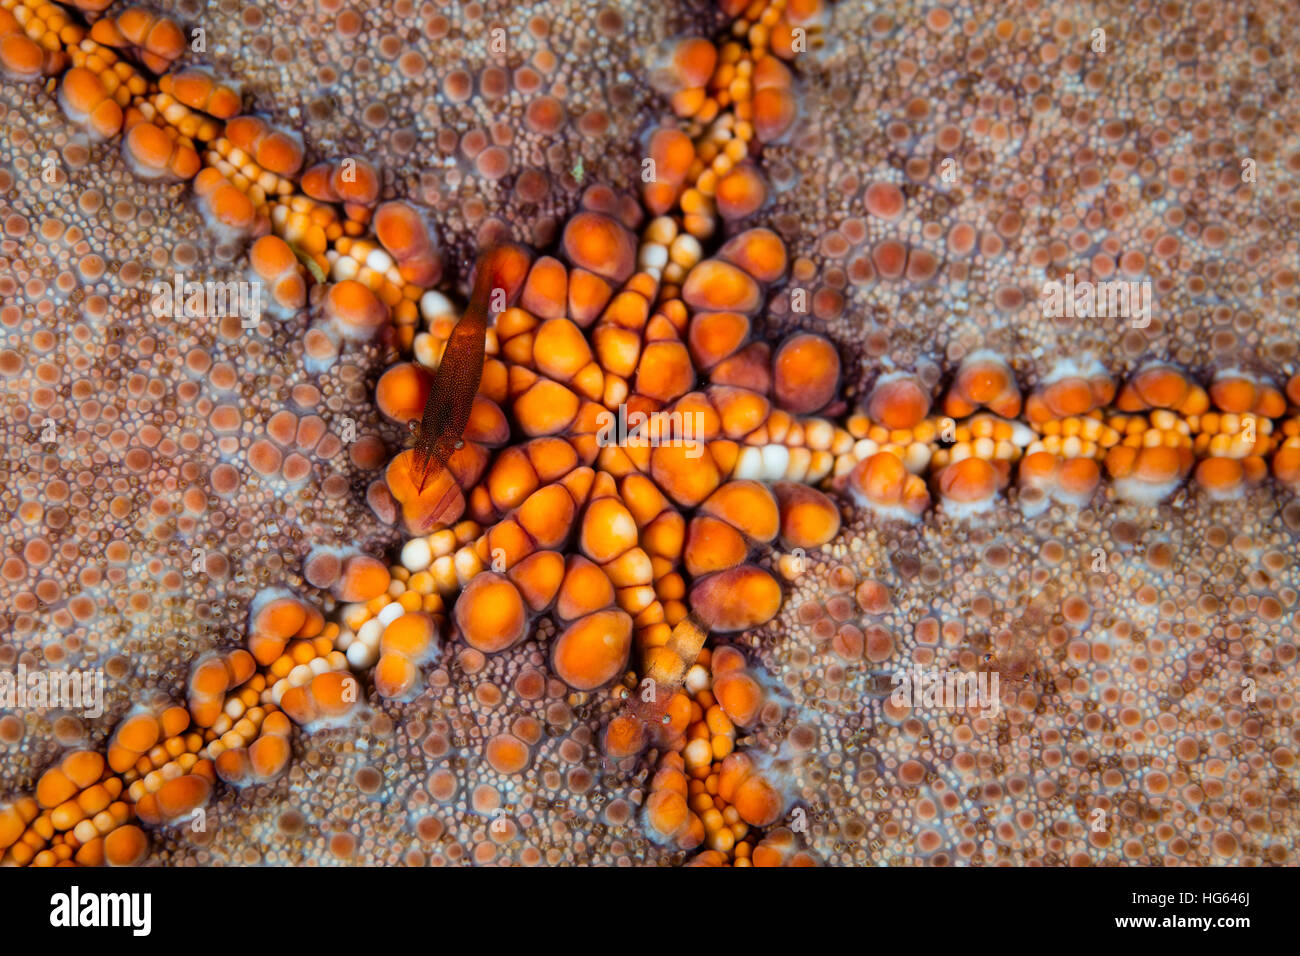 A tiny shrimp (Periclimenes soror) lives on a pin-cushion starfish, Raja Ampat, Indonesia. Stock Photo